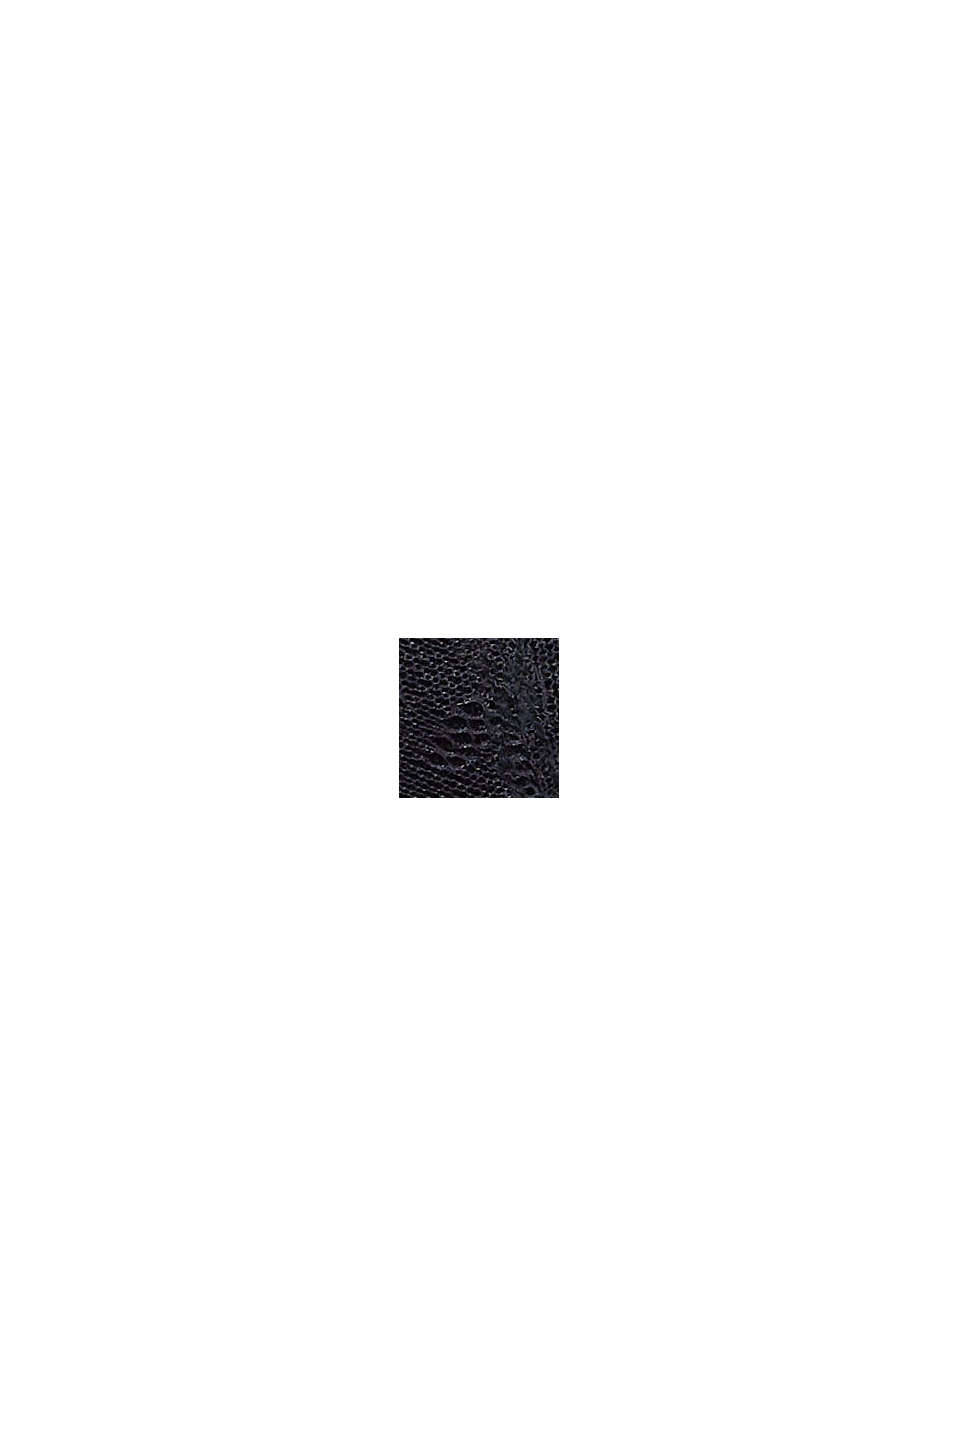 Soutien-gorge sans armatures en dentelle et microfibre, BLACK, swatch